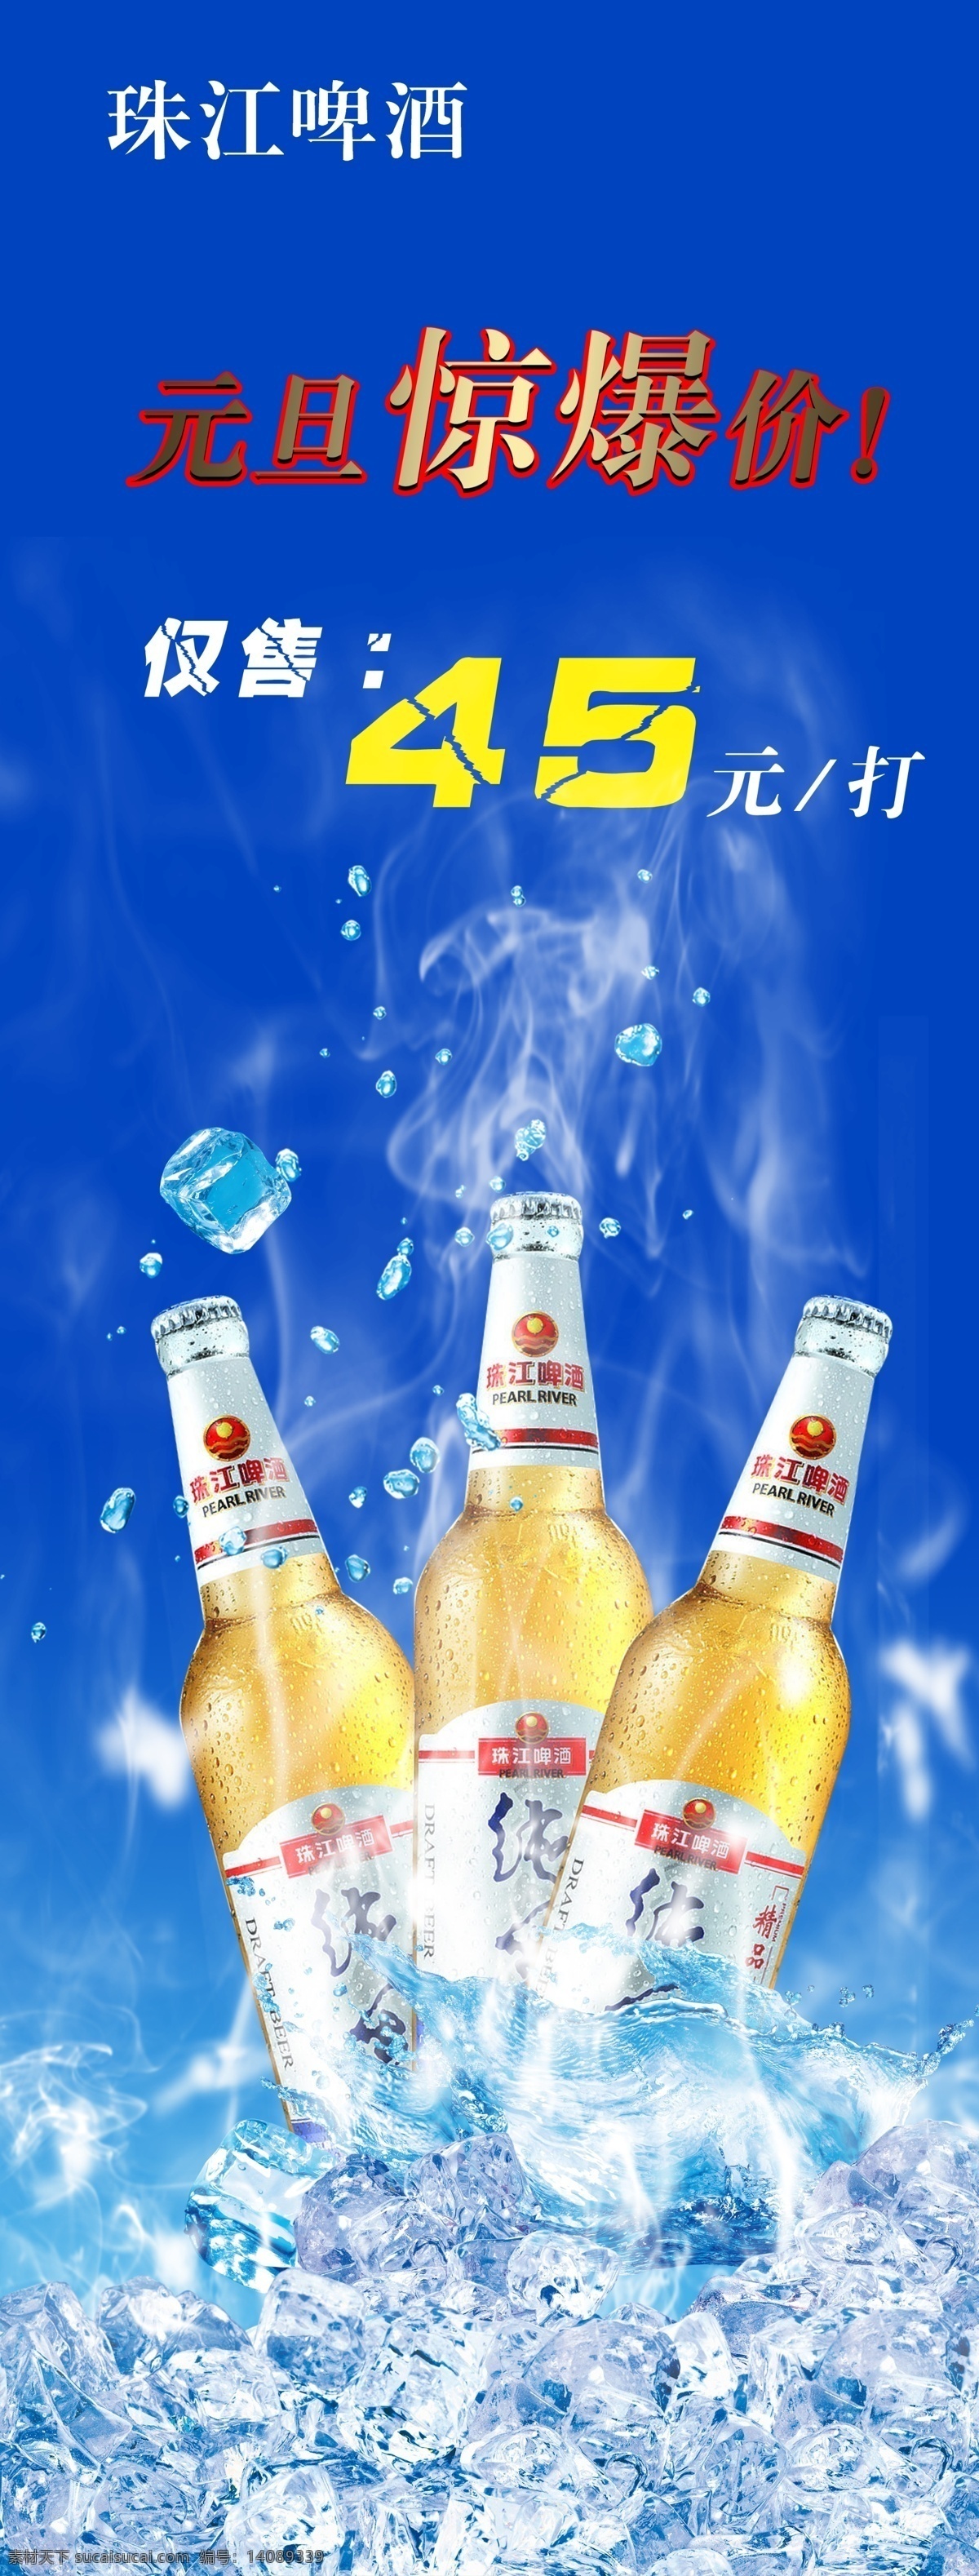 珠江 啤酒 x 展架 模版下载 珠江啤酒 x展架 啤酒展架 冰块 分层的冰块 源文件